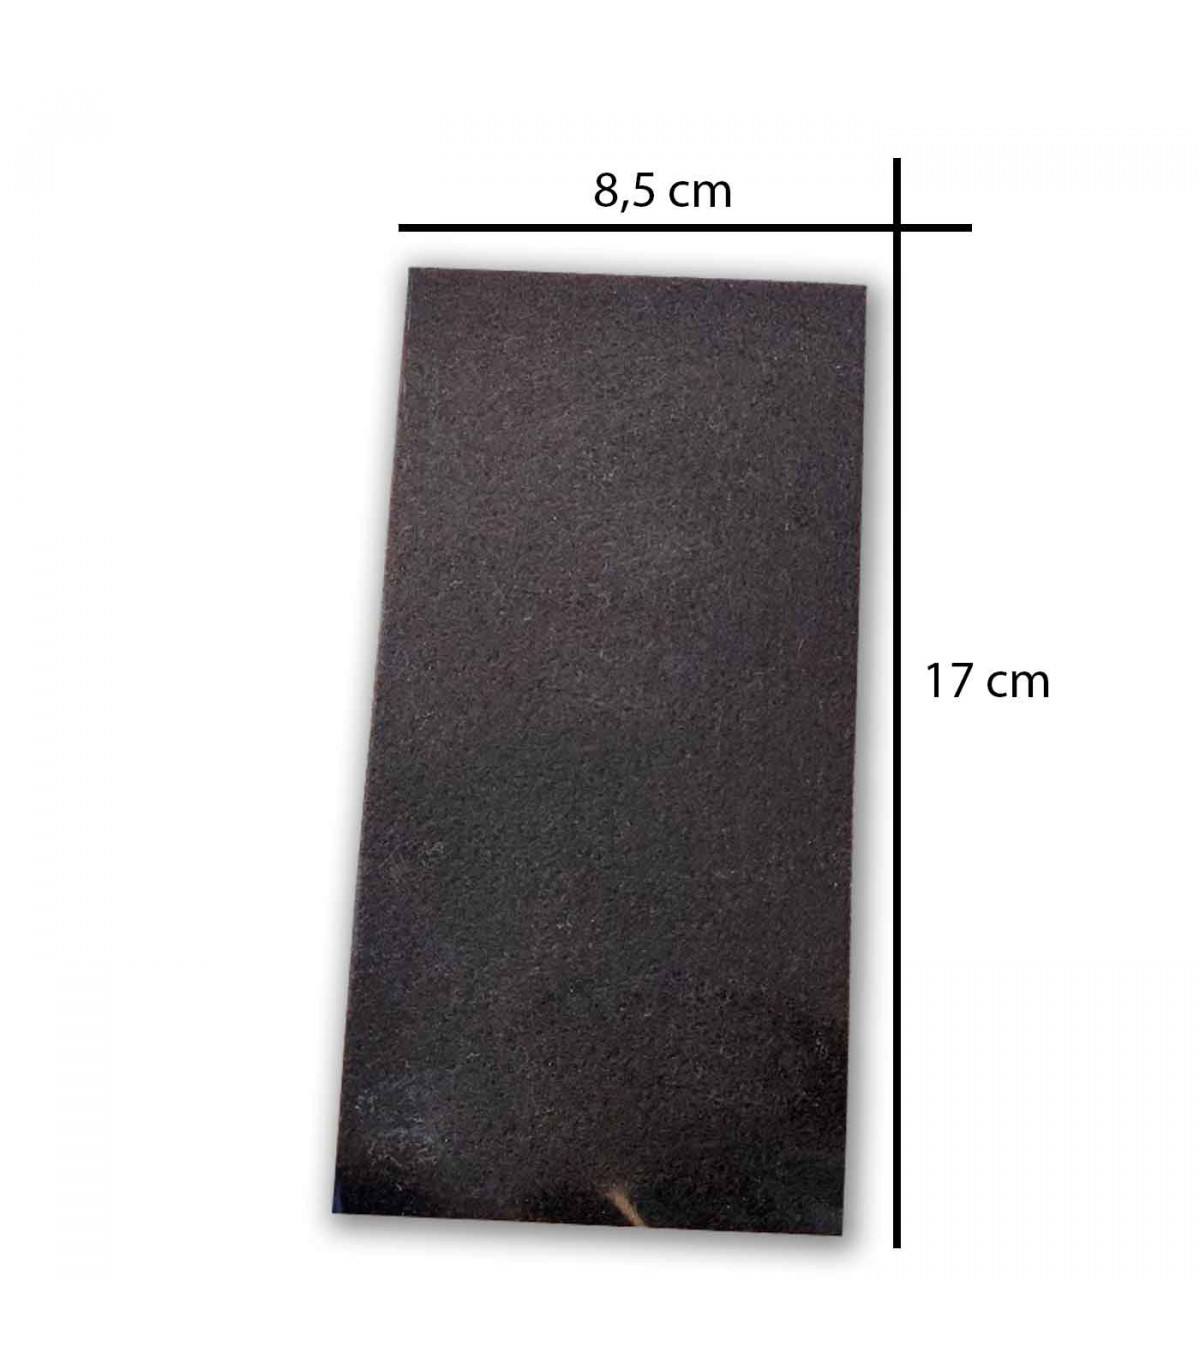 PrixPrime - Cuadrado de fieltro adhesivo para muebles 32x32 mm 4-pack